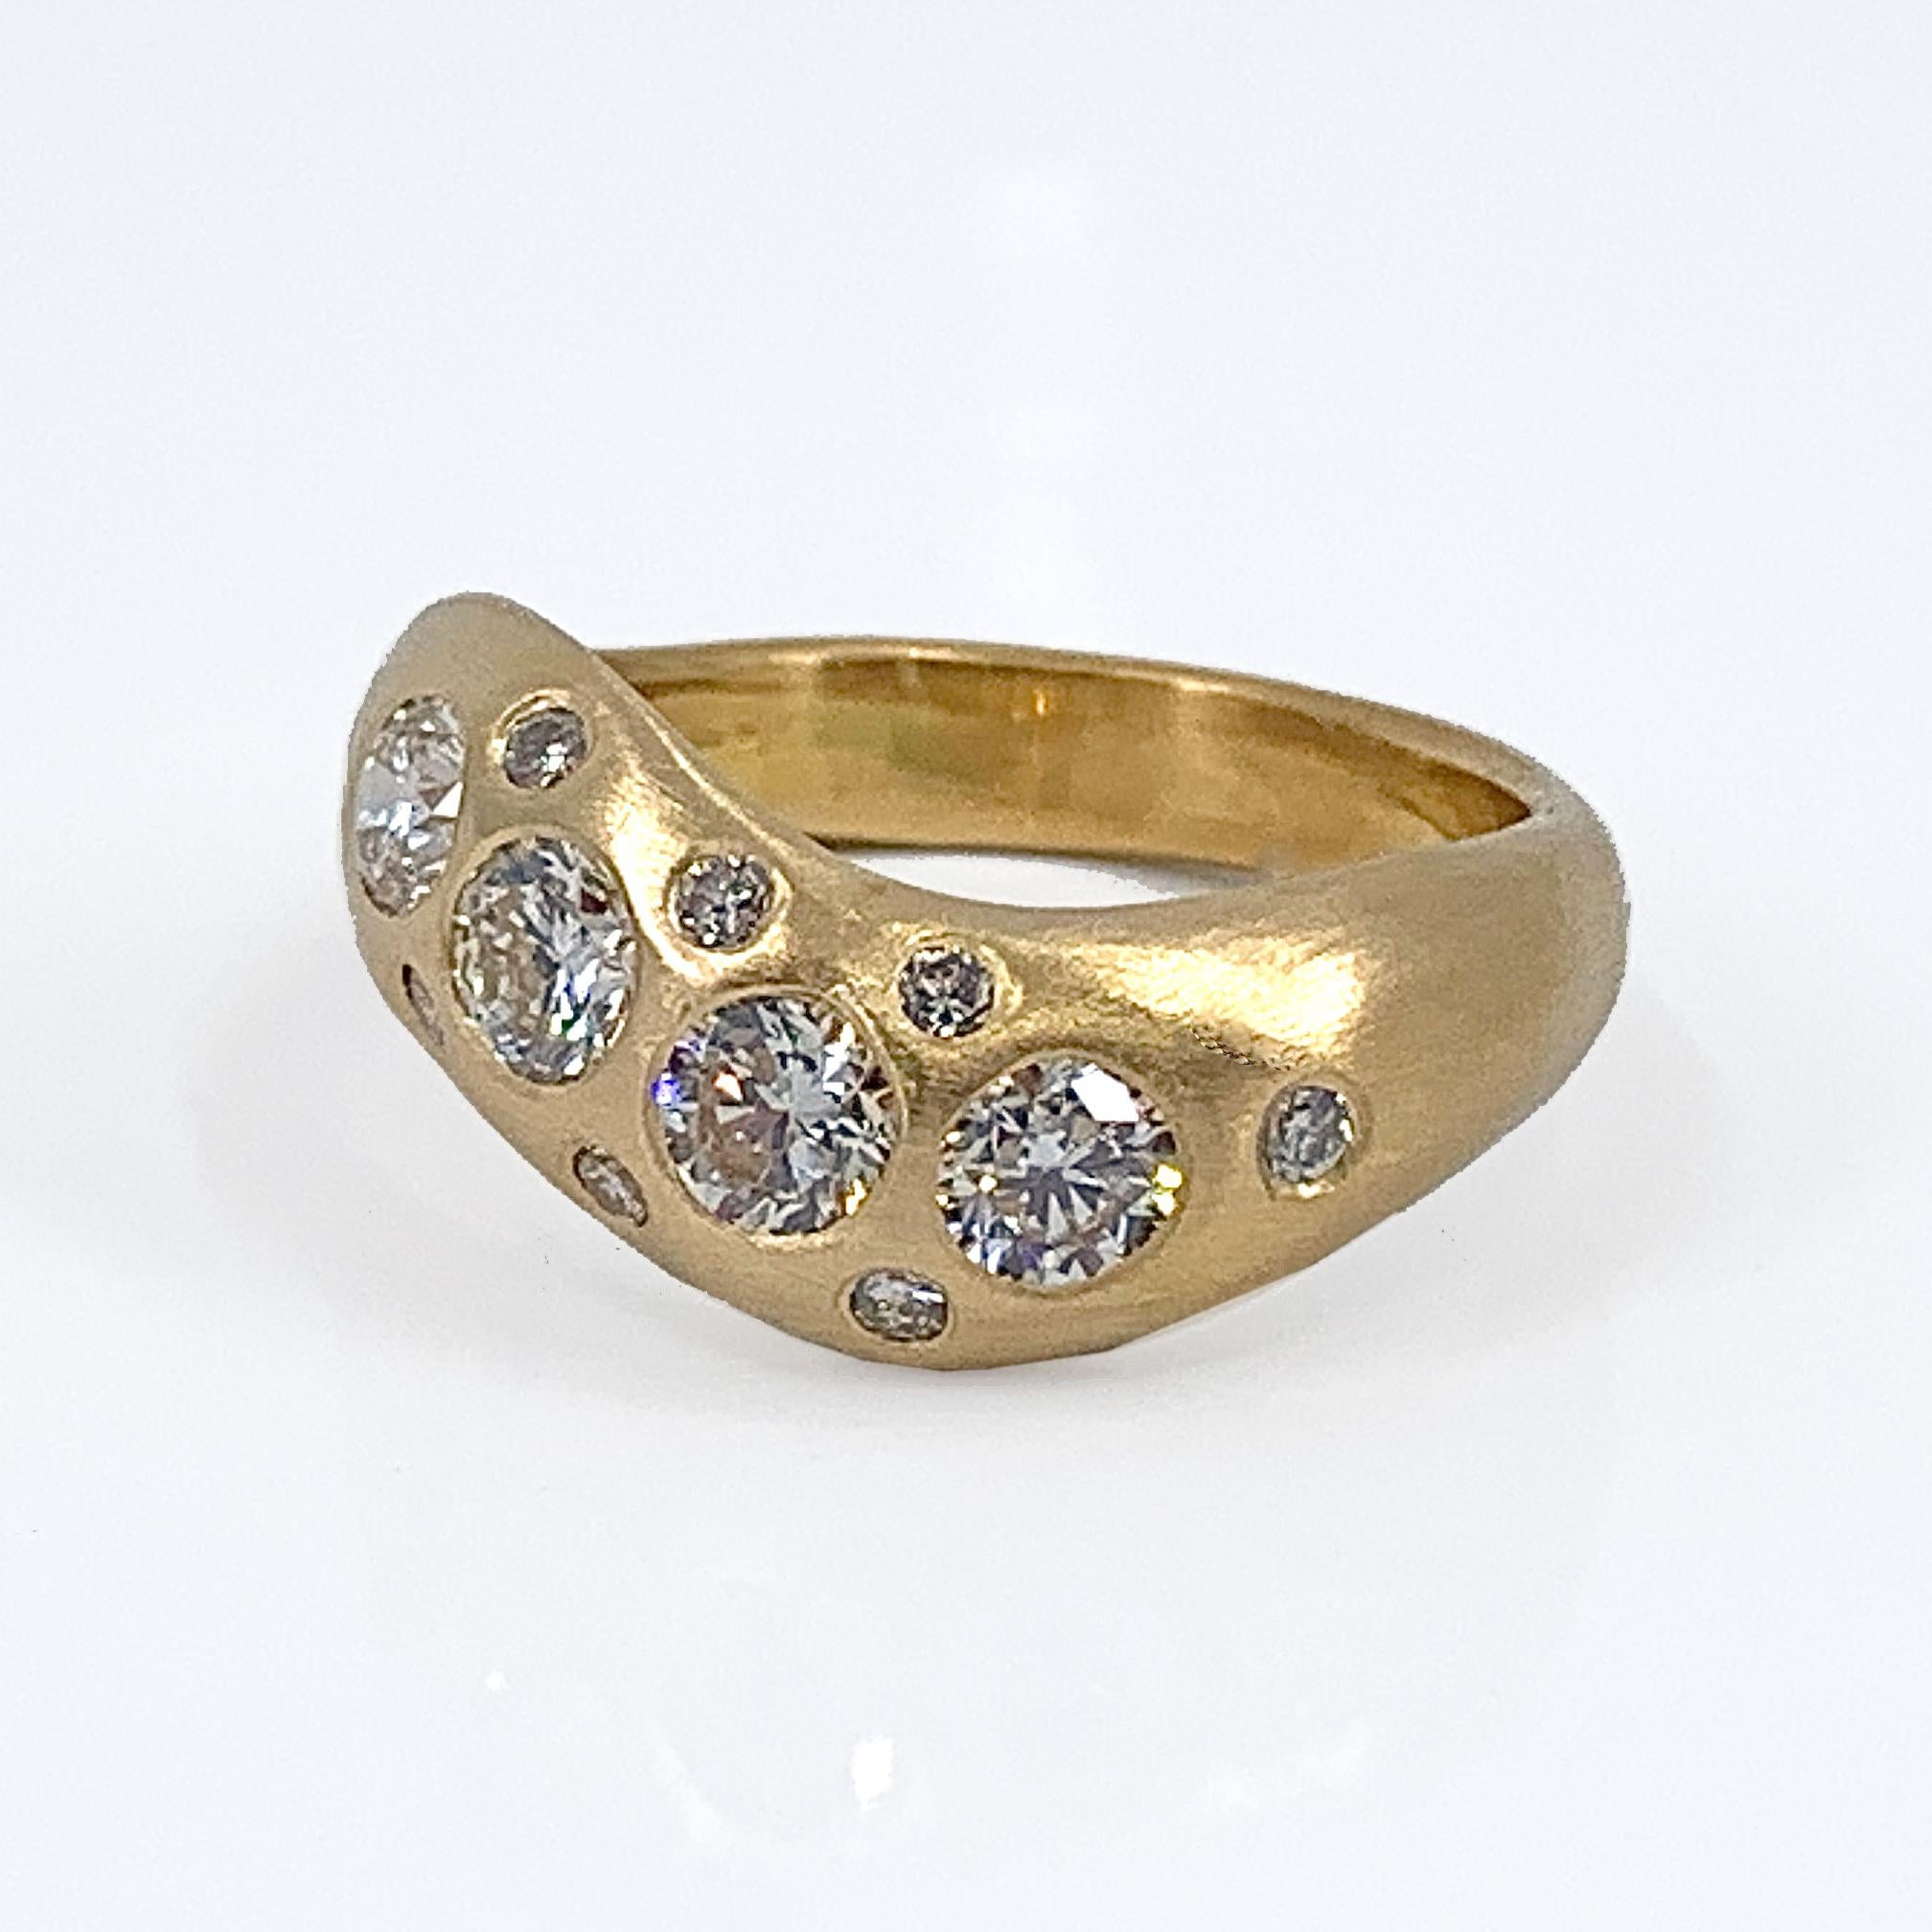 Un design original d'Eytan Brandes présente l'union parfaite de l'or jaune et des diamants.  Au lieu que l'or serve principalement de système de transport pour les pierres, cette bague donne aux deux composants un rôle de premier plan.  

Le métal